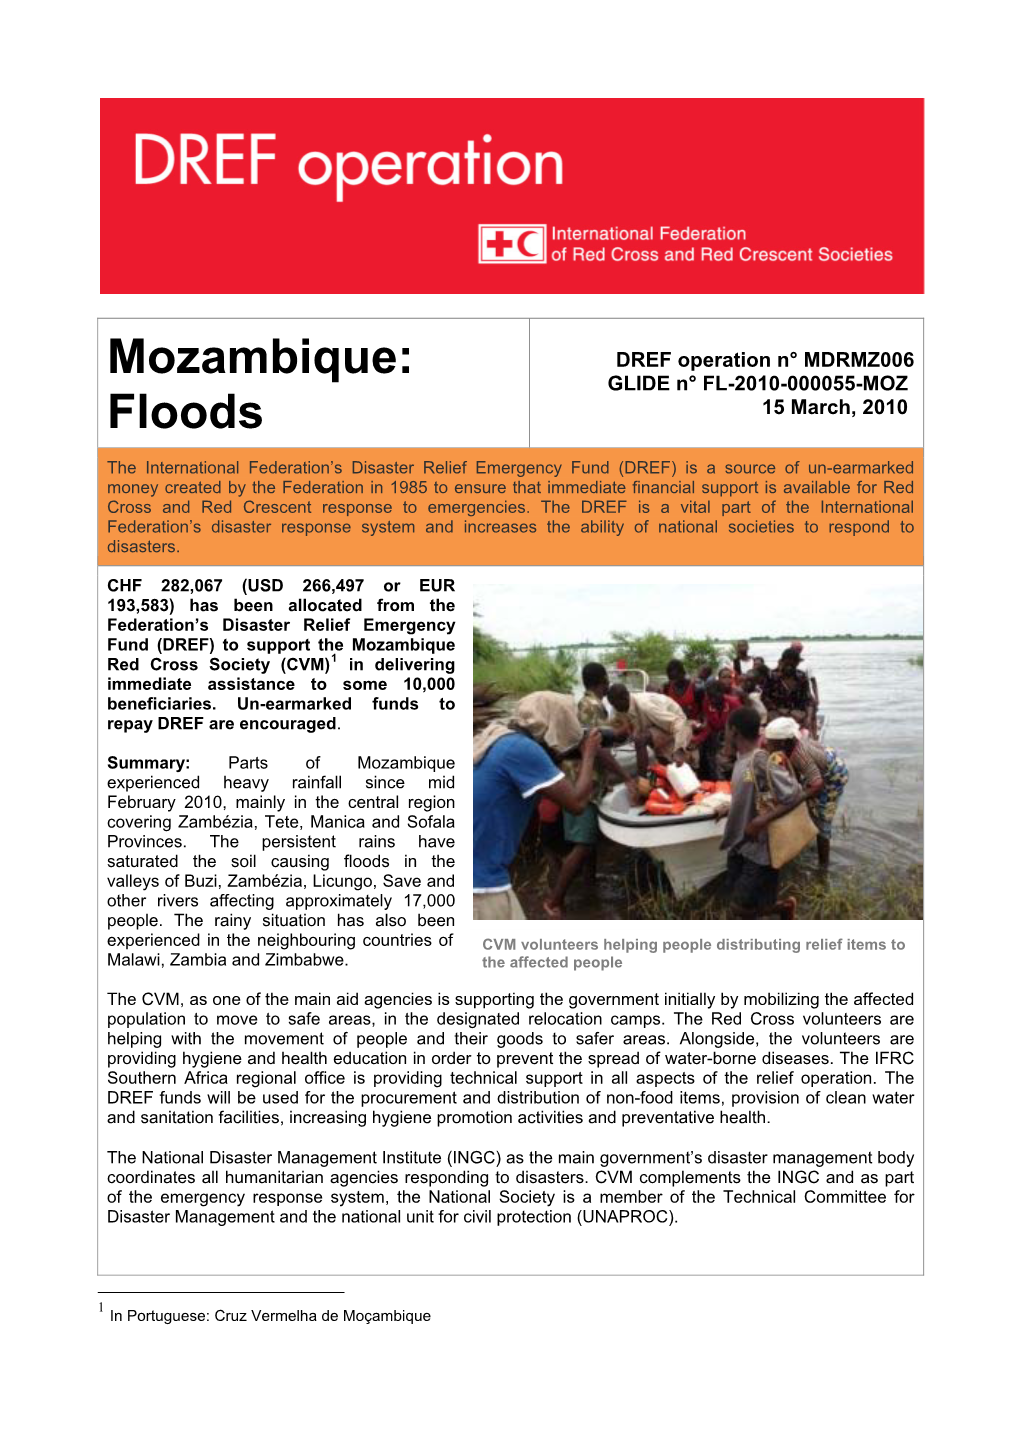 Mozambique: Floods